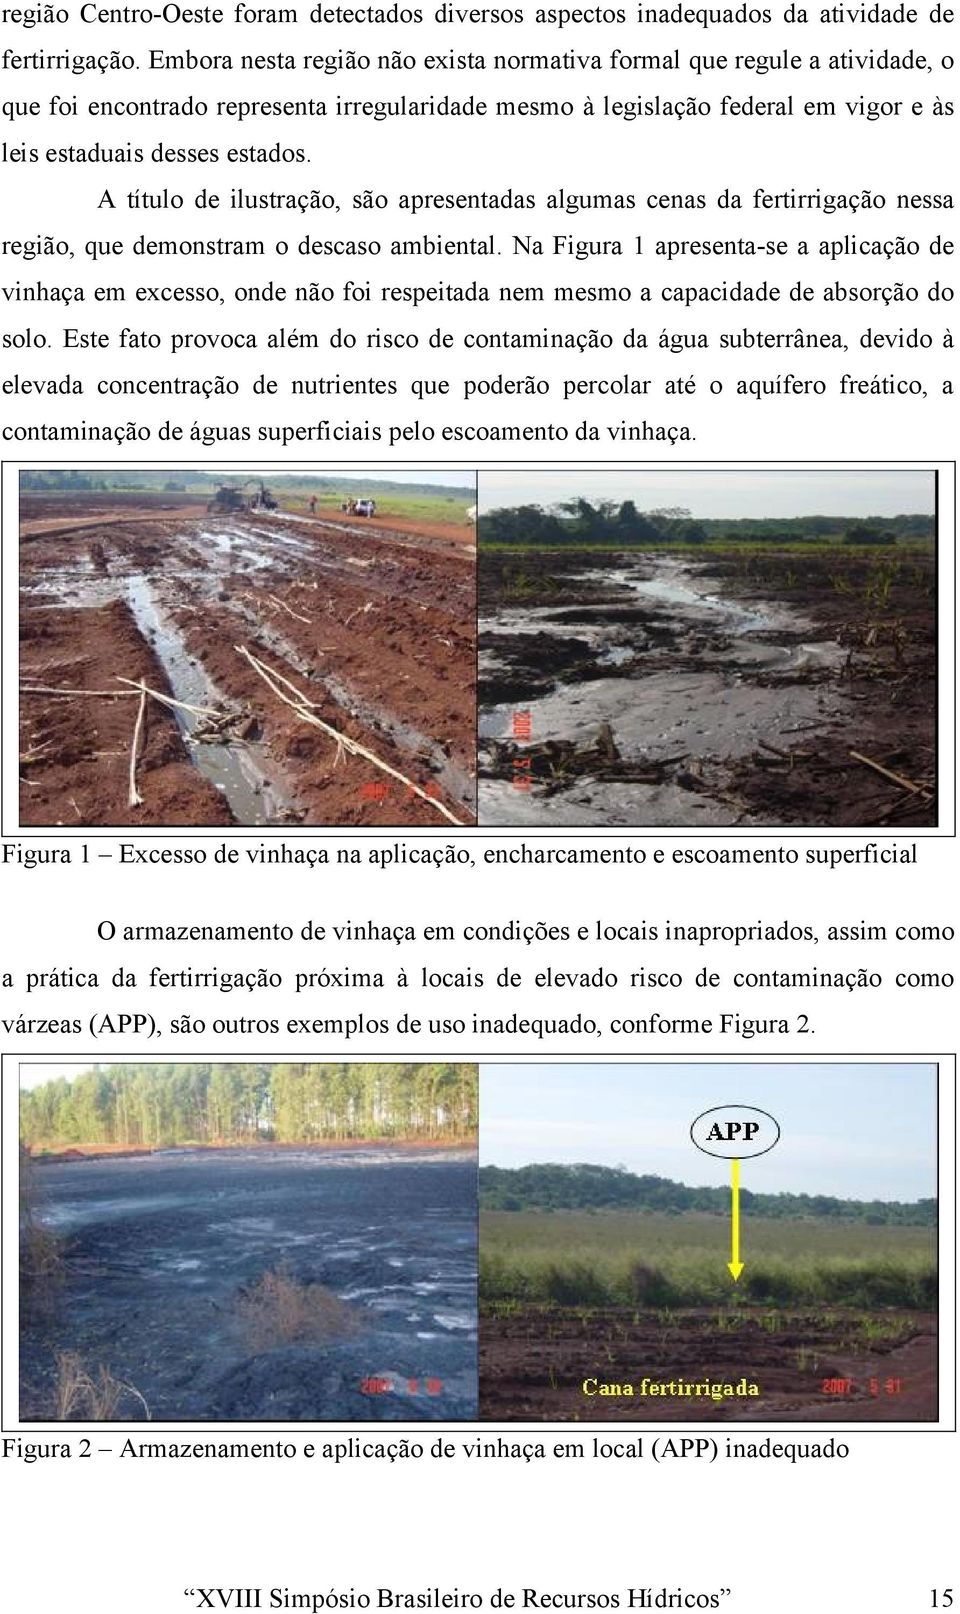 A título de ilustração, são apresentadas algumas cenas da fertirrigação nessa região, que demonstram o descaso ambiental.